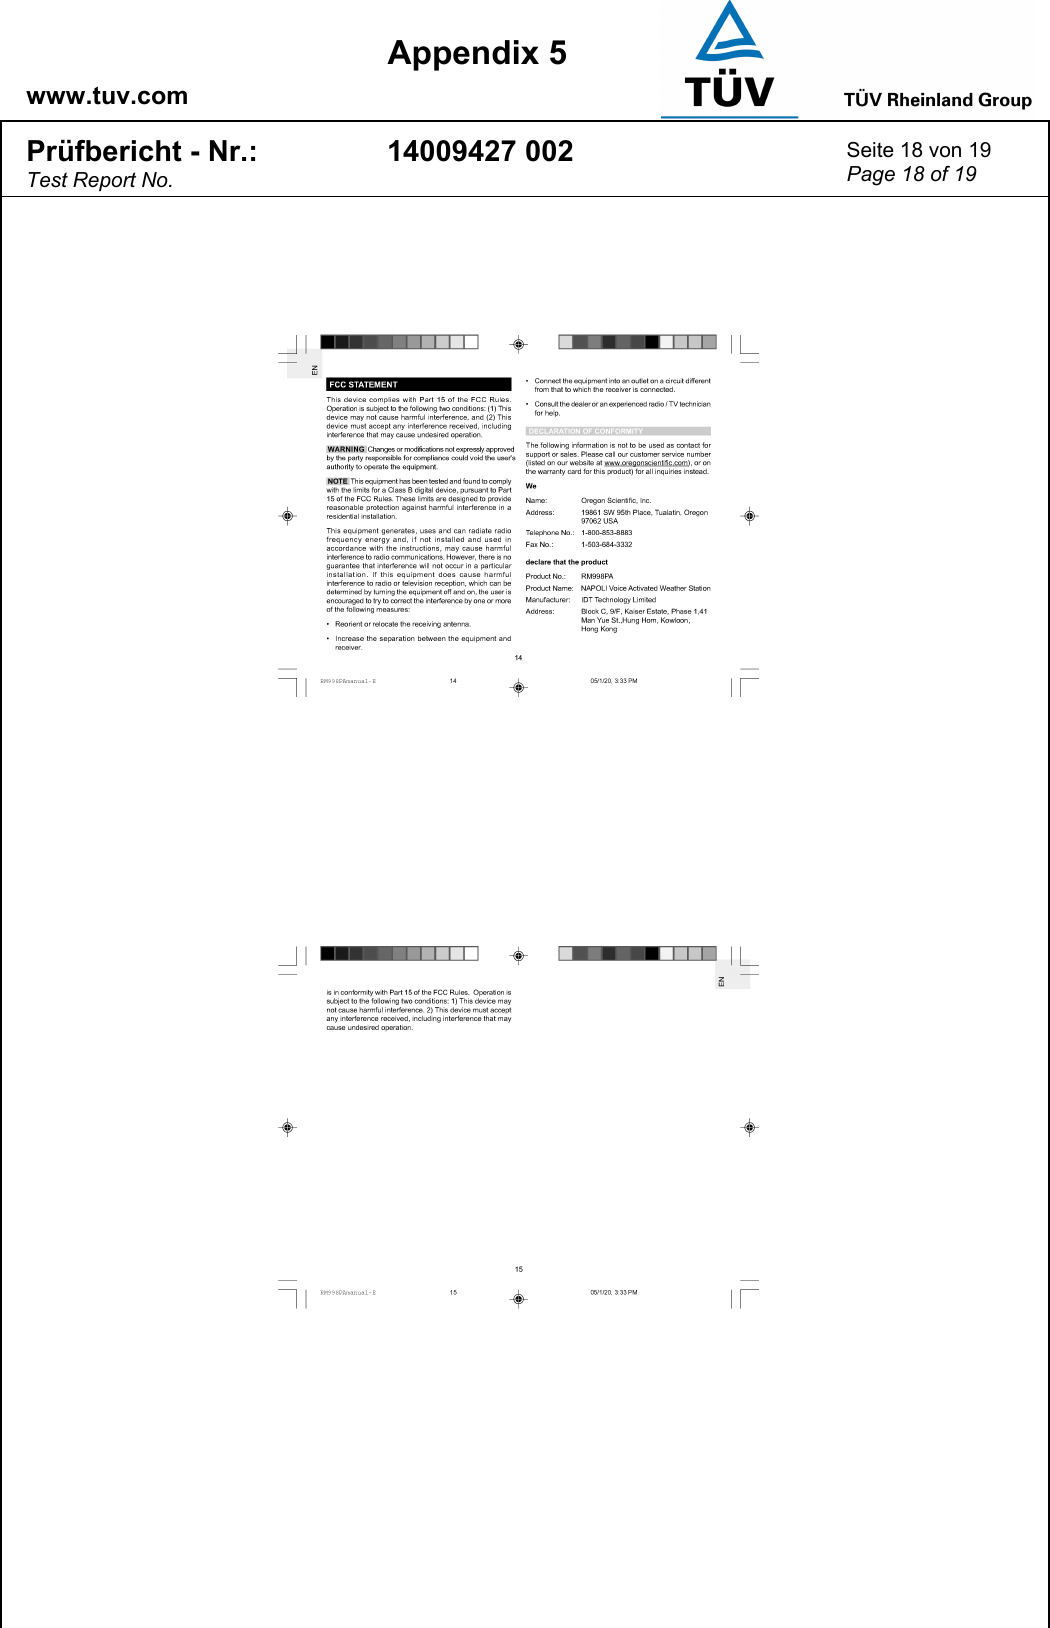    www.tuv.com  Appendix 5 Prüfbericht - Nr.: Test Report No. 14009427 002  Seite 18 von 19 Page 18 of 19   